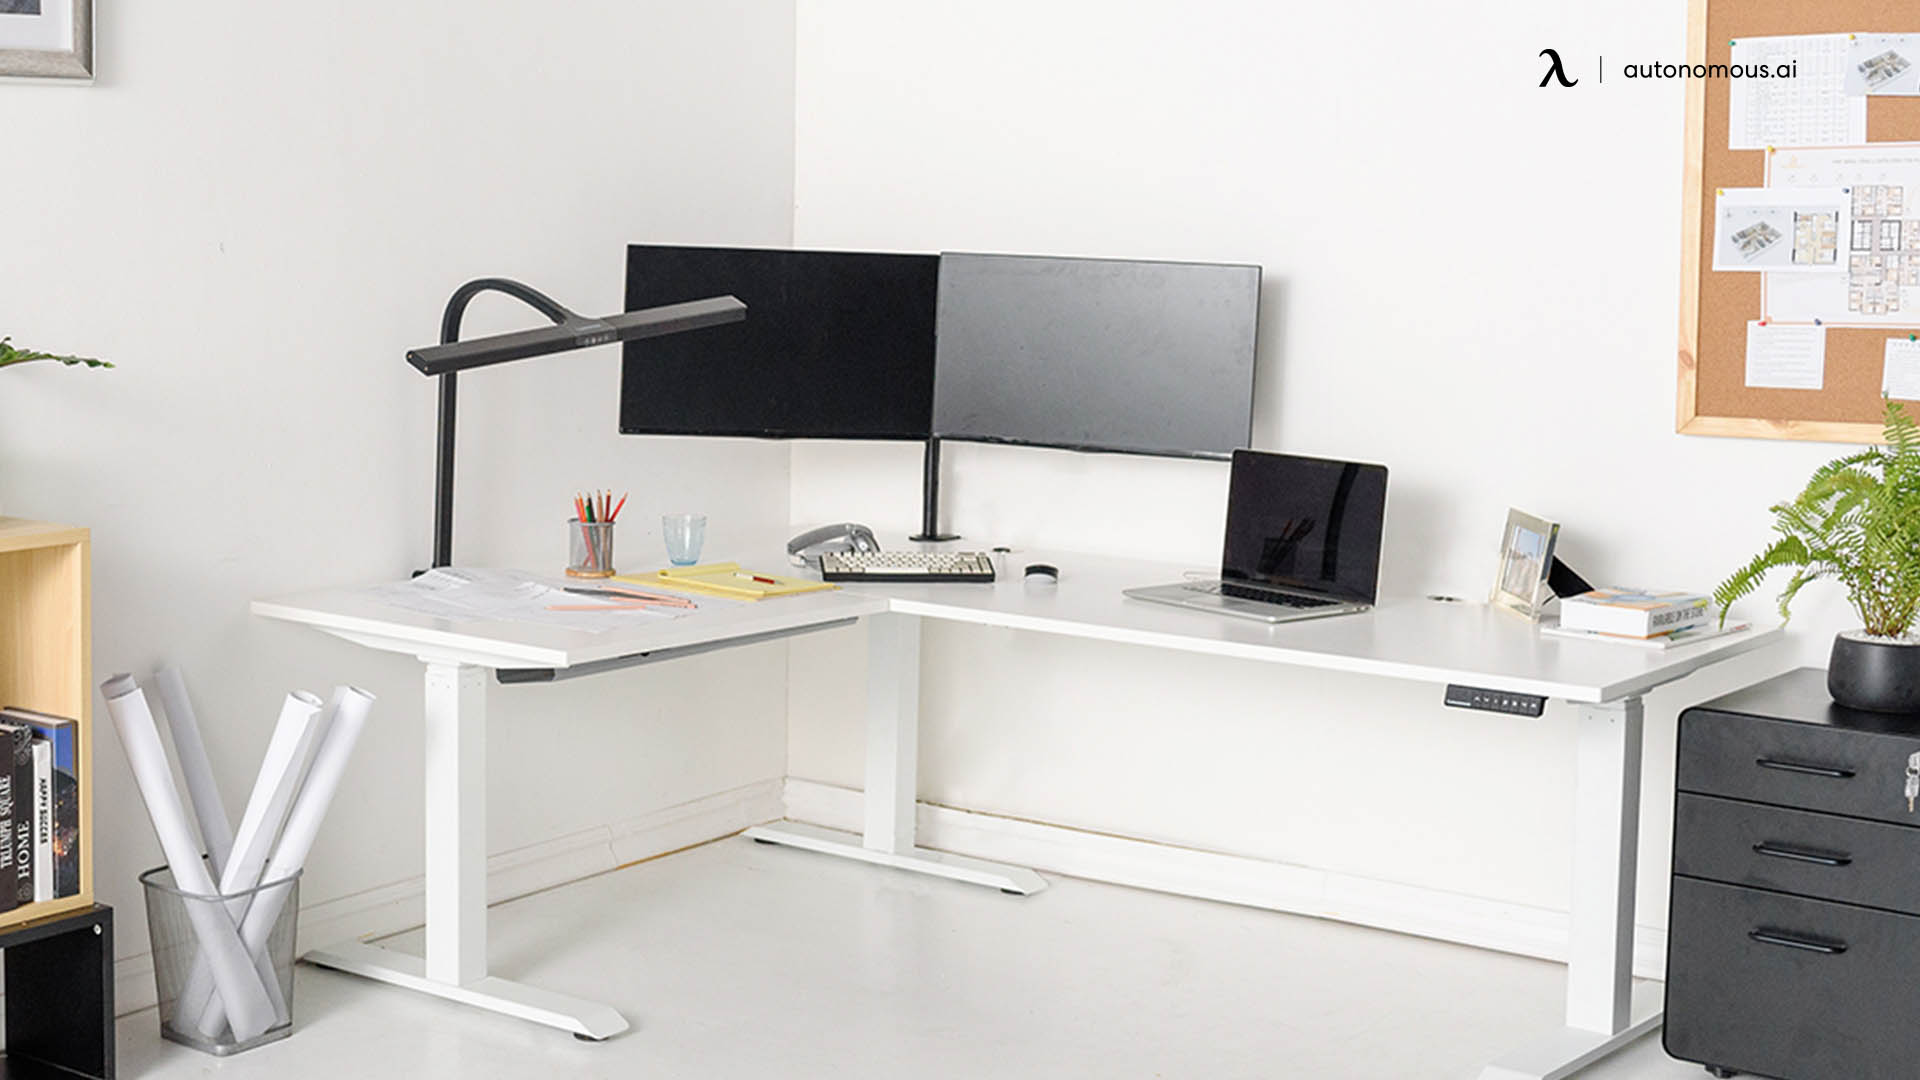 SmartDesk Corner adjustable home office desk